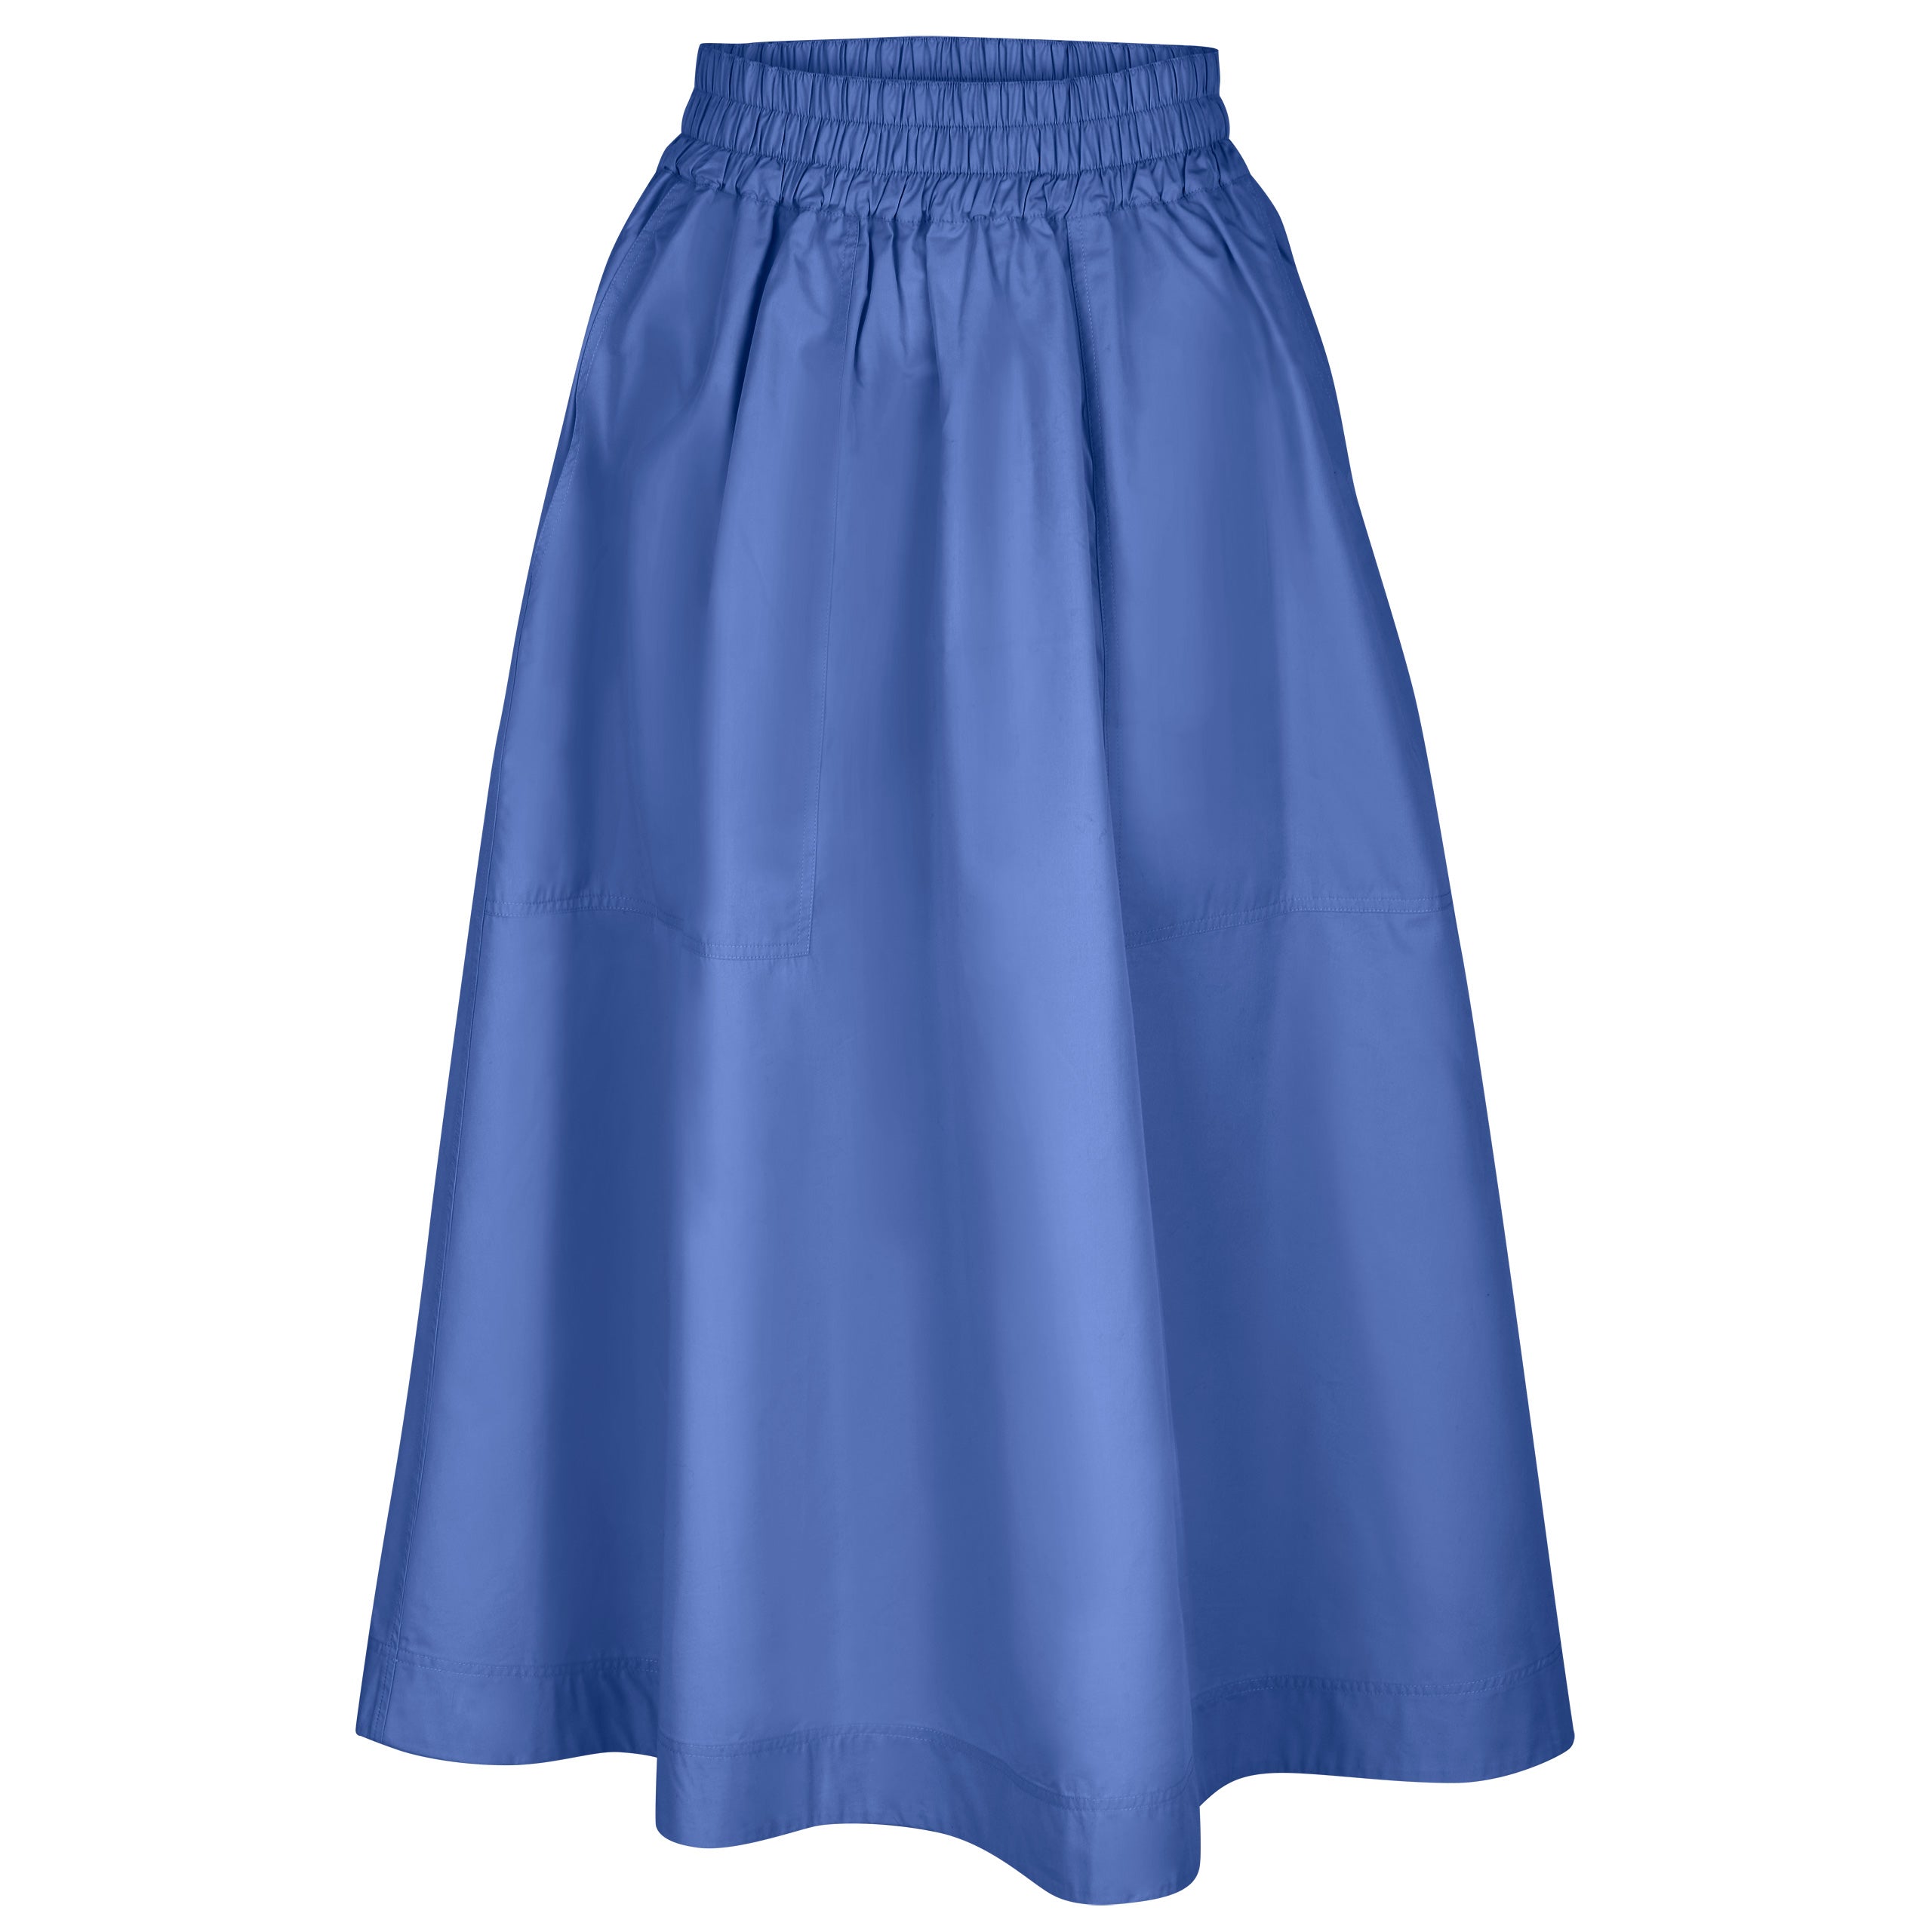 Skirt Code 45 french blue 